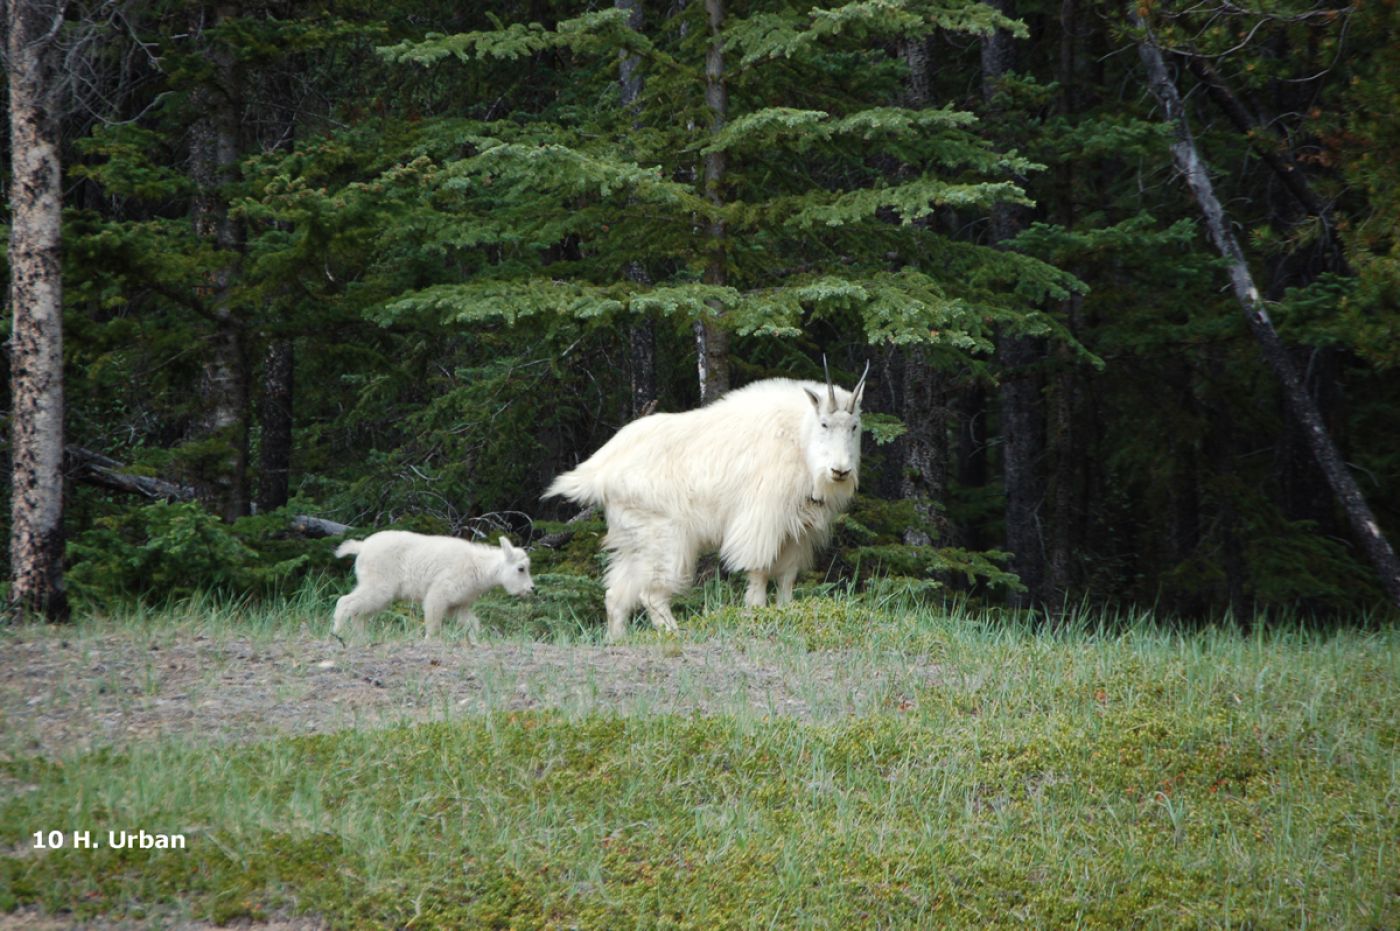 mountain goat with kit during adventure tour with children in canadian rockies | bergziege bei der abenteuerreise mit kindern in kanadischen rockies